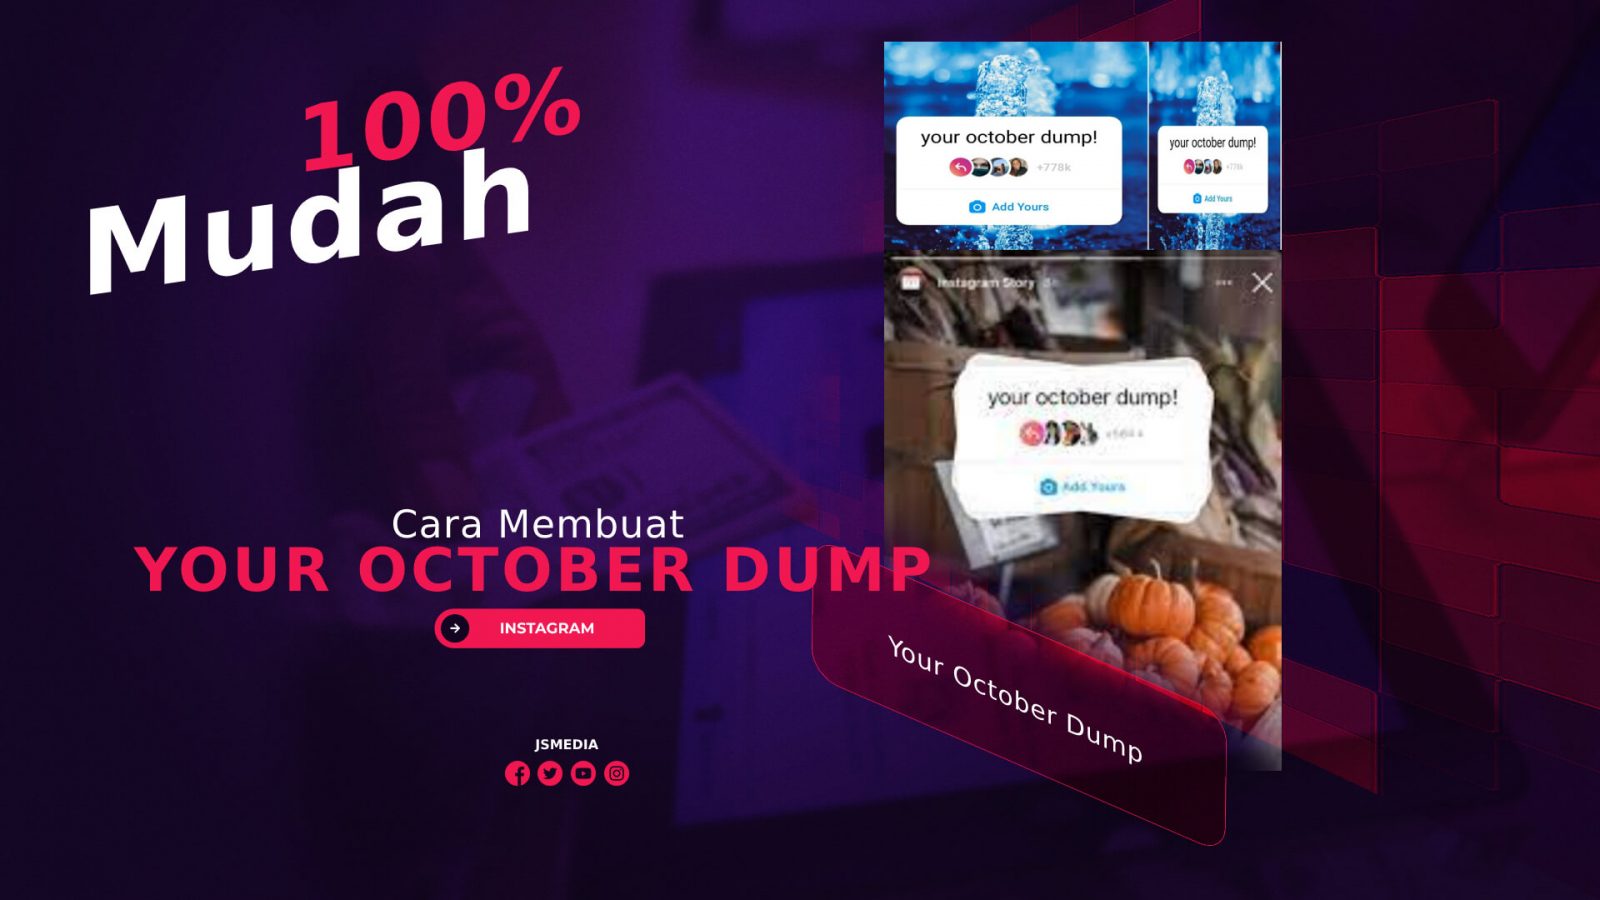 Cara Membuat Your October Dump, 100% Mudah